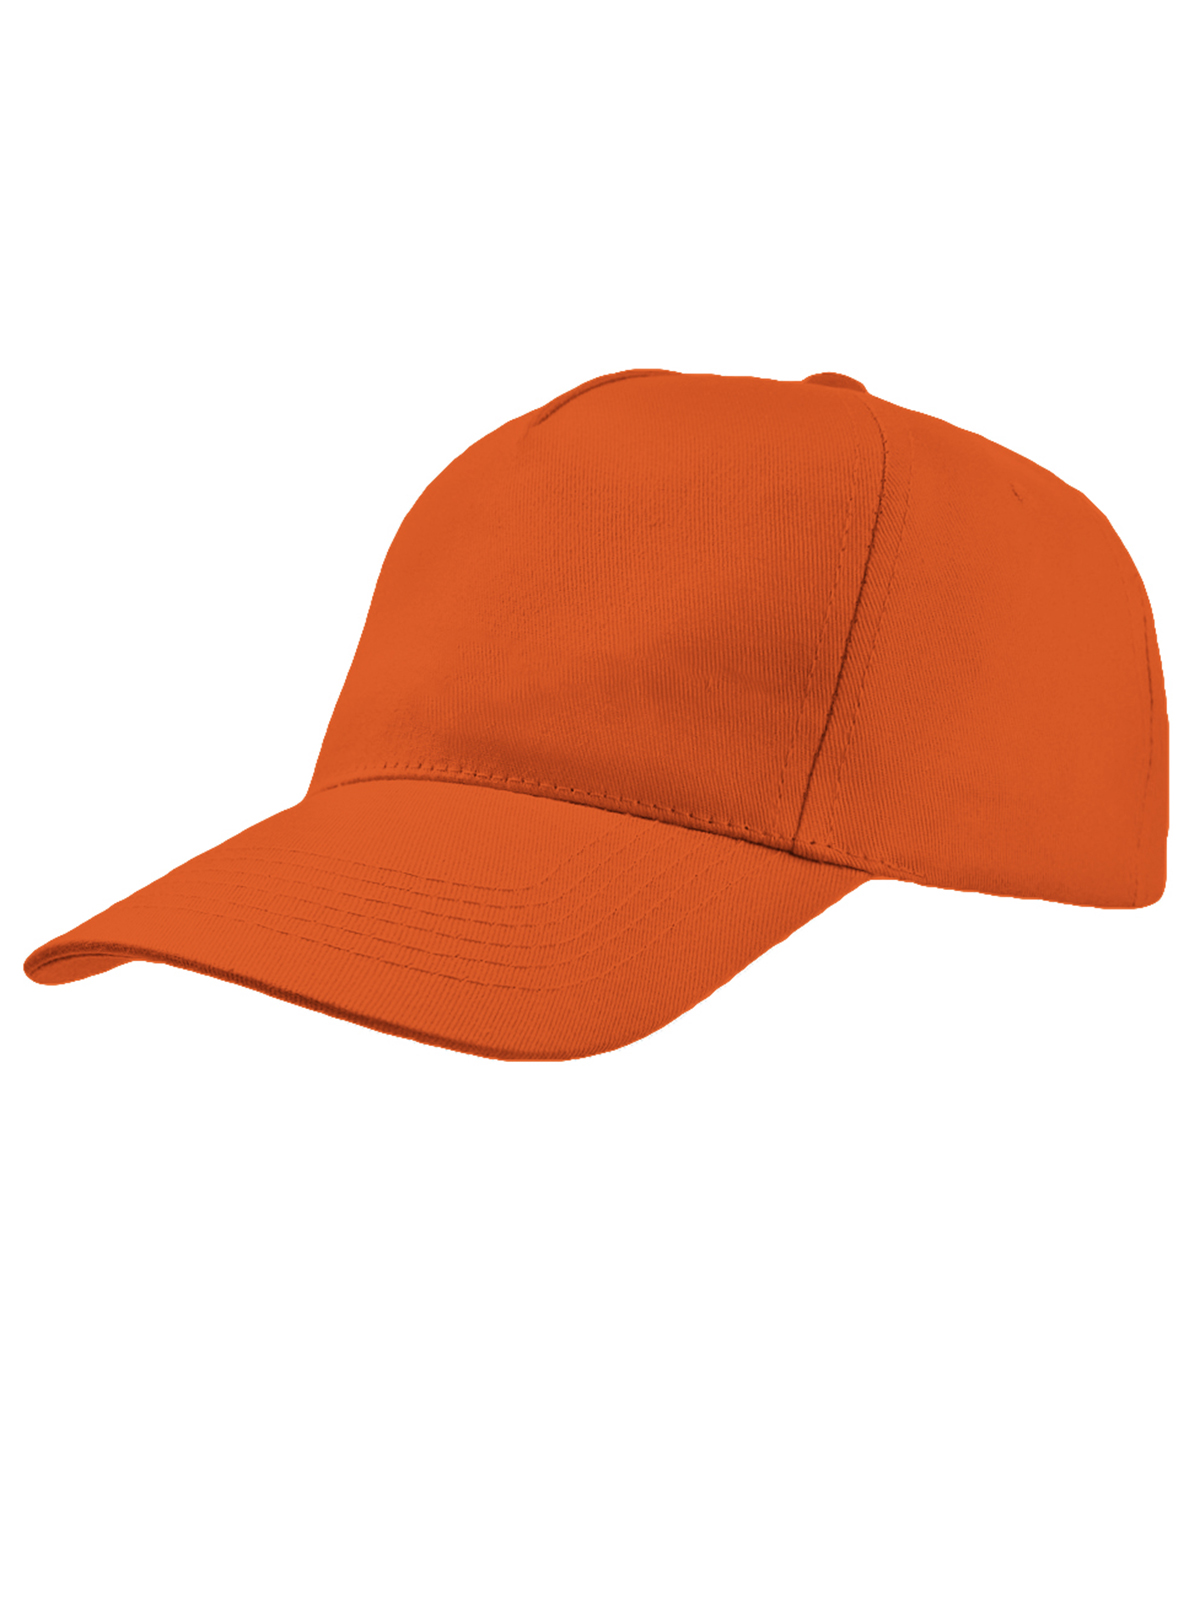 promo-cap-orange.webp